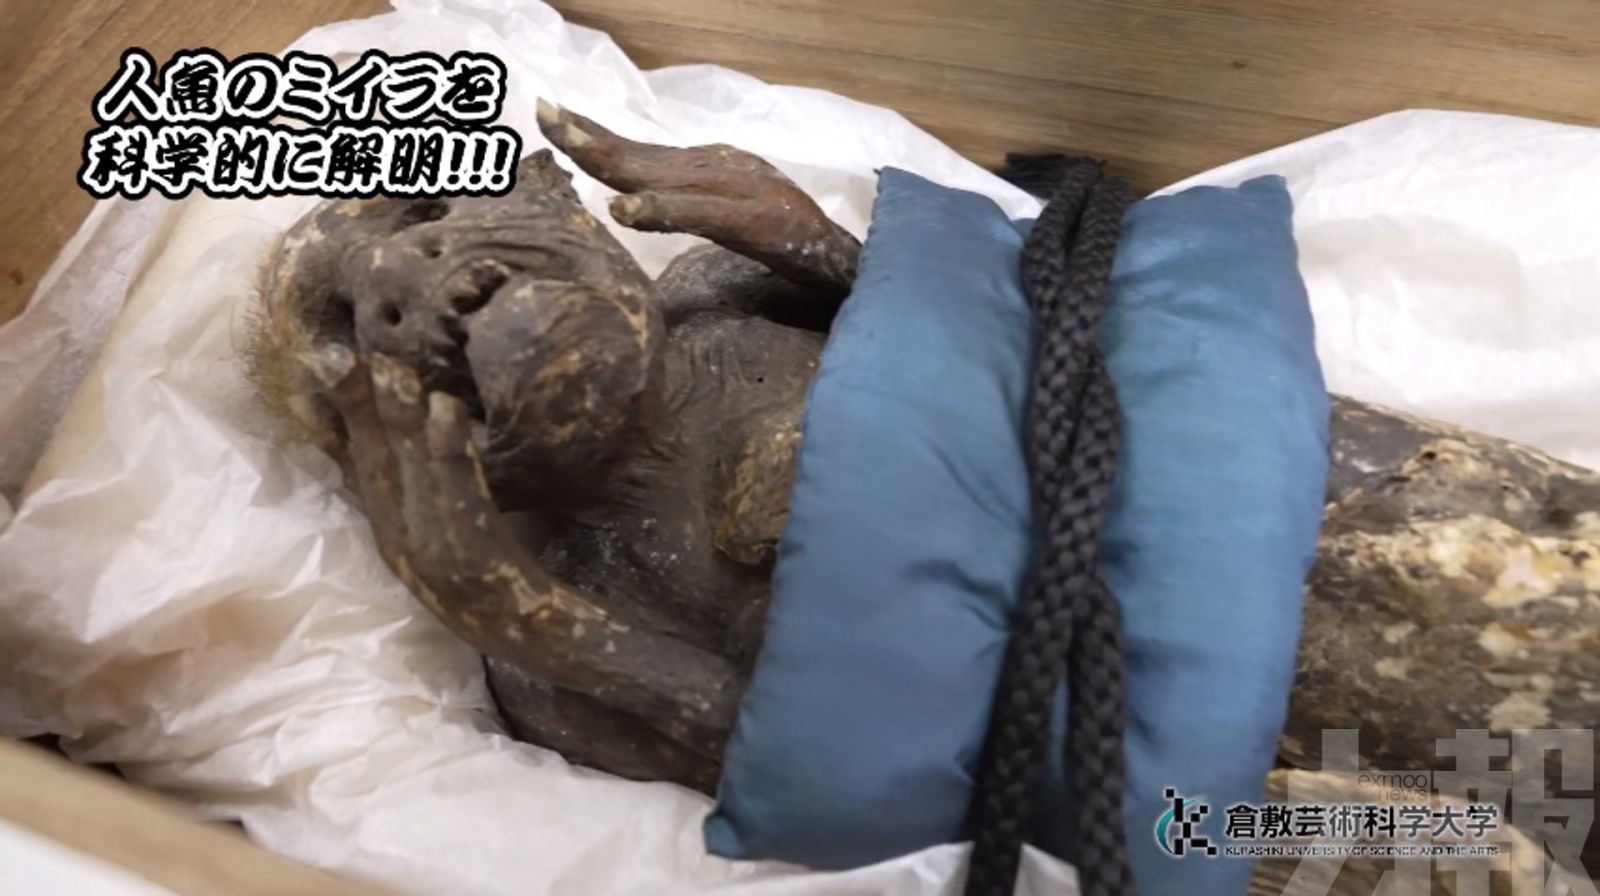 300歲「人魚木乃伊」驚現人體相似組織